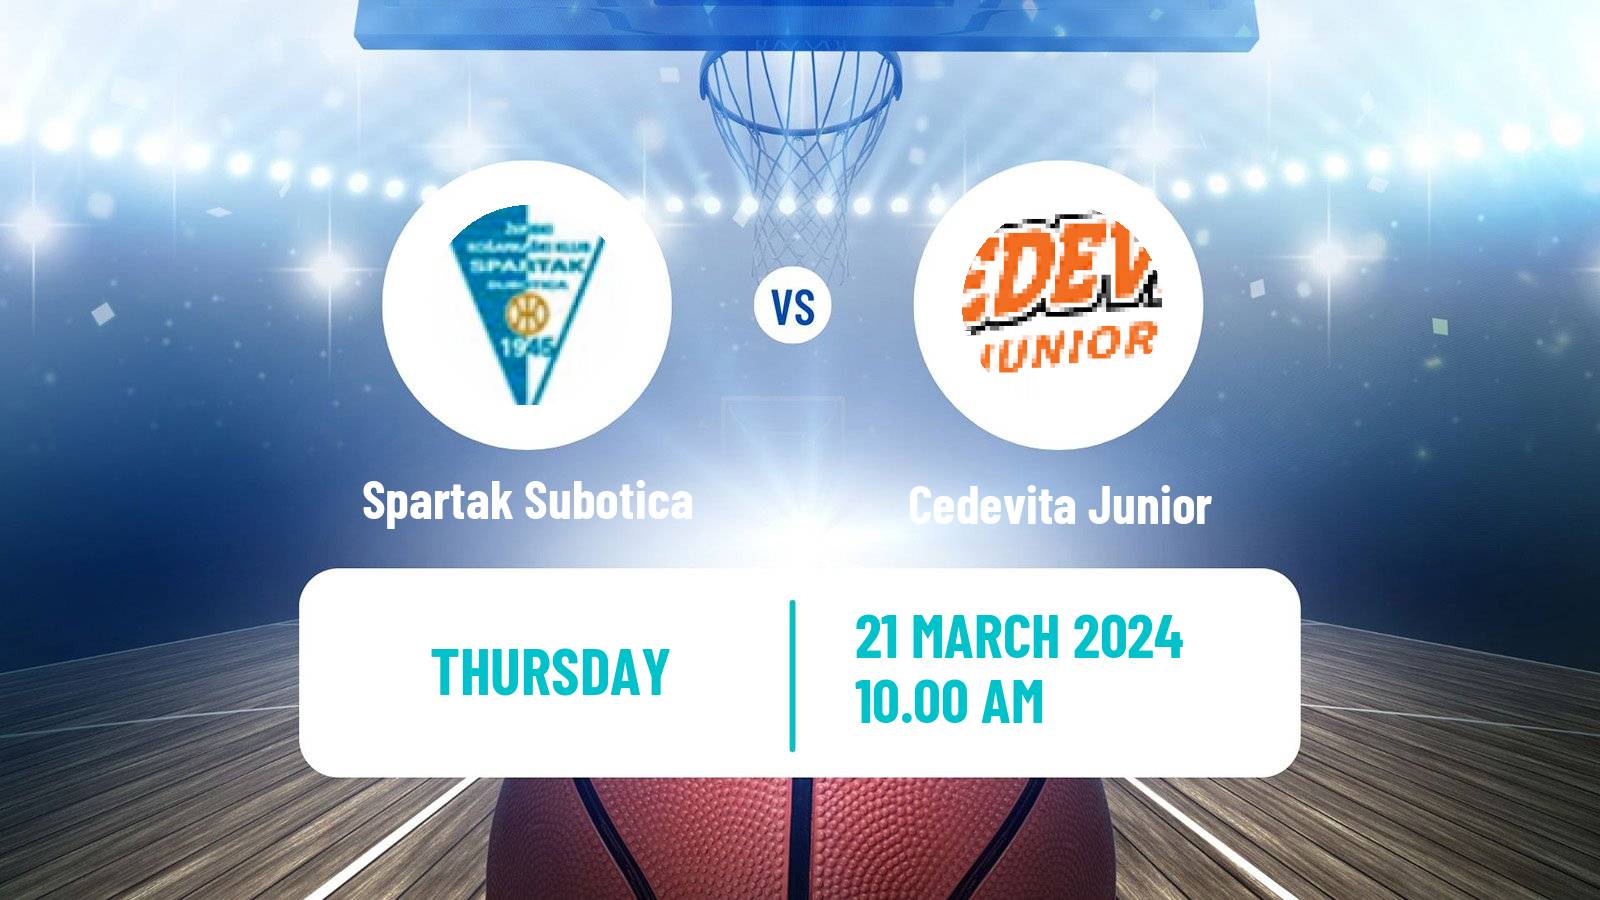 Basketball Adriatic League 2 Spartak Subotica - Cedevita Junior